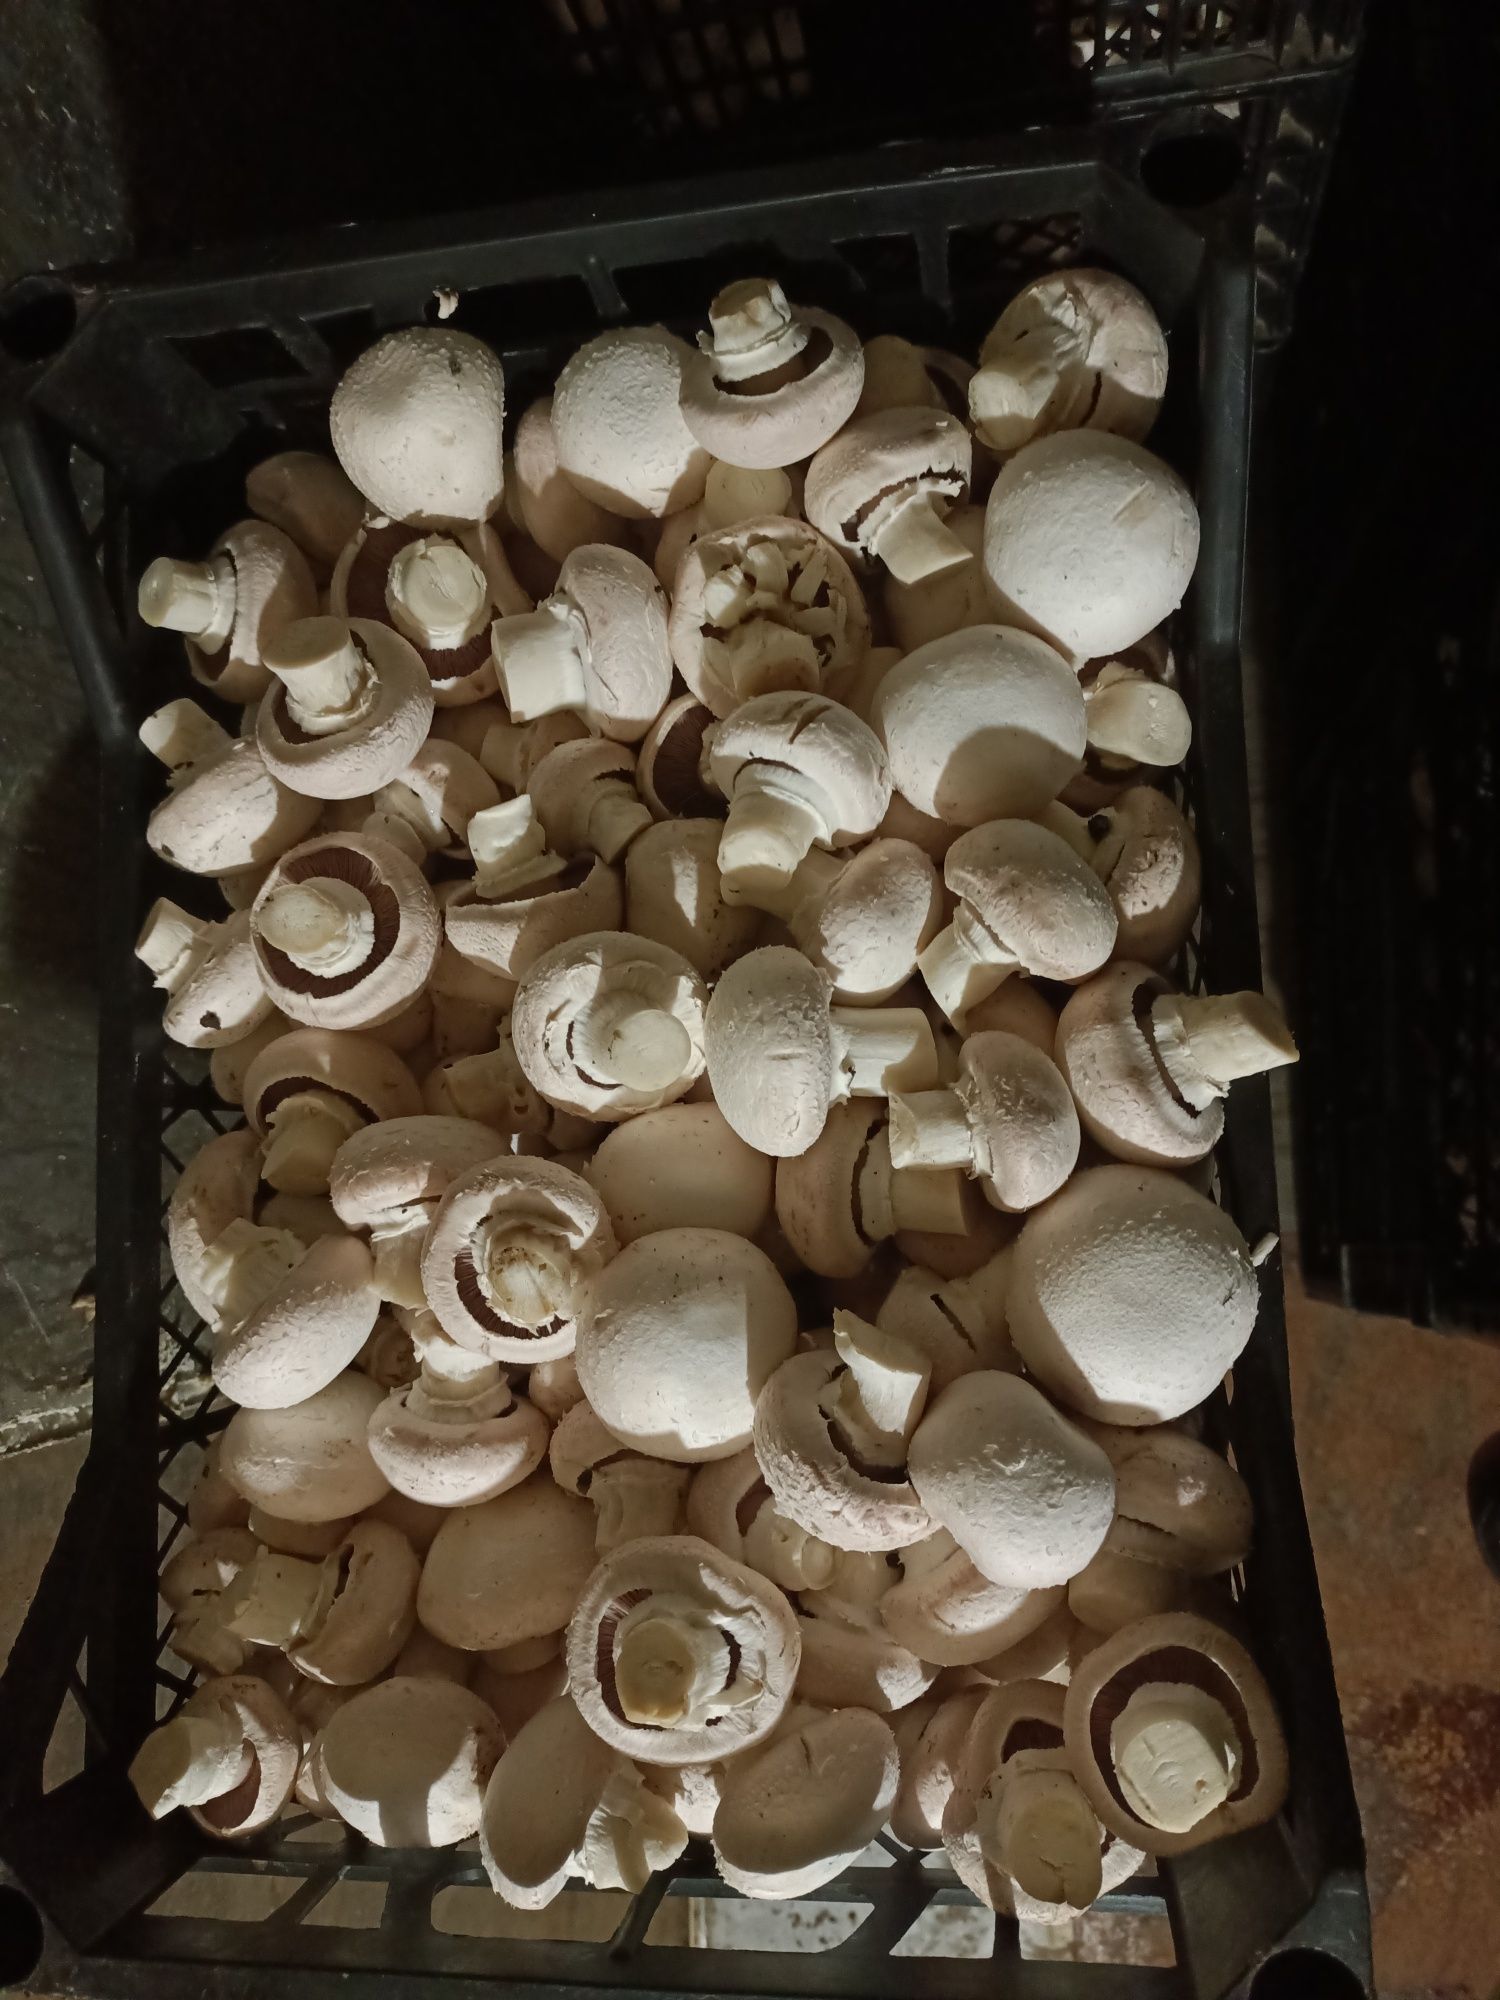 Продам грибы шампиньоны